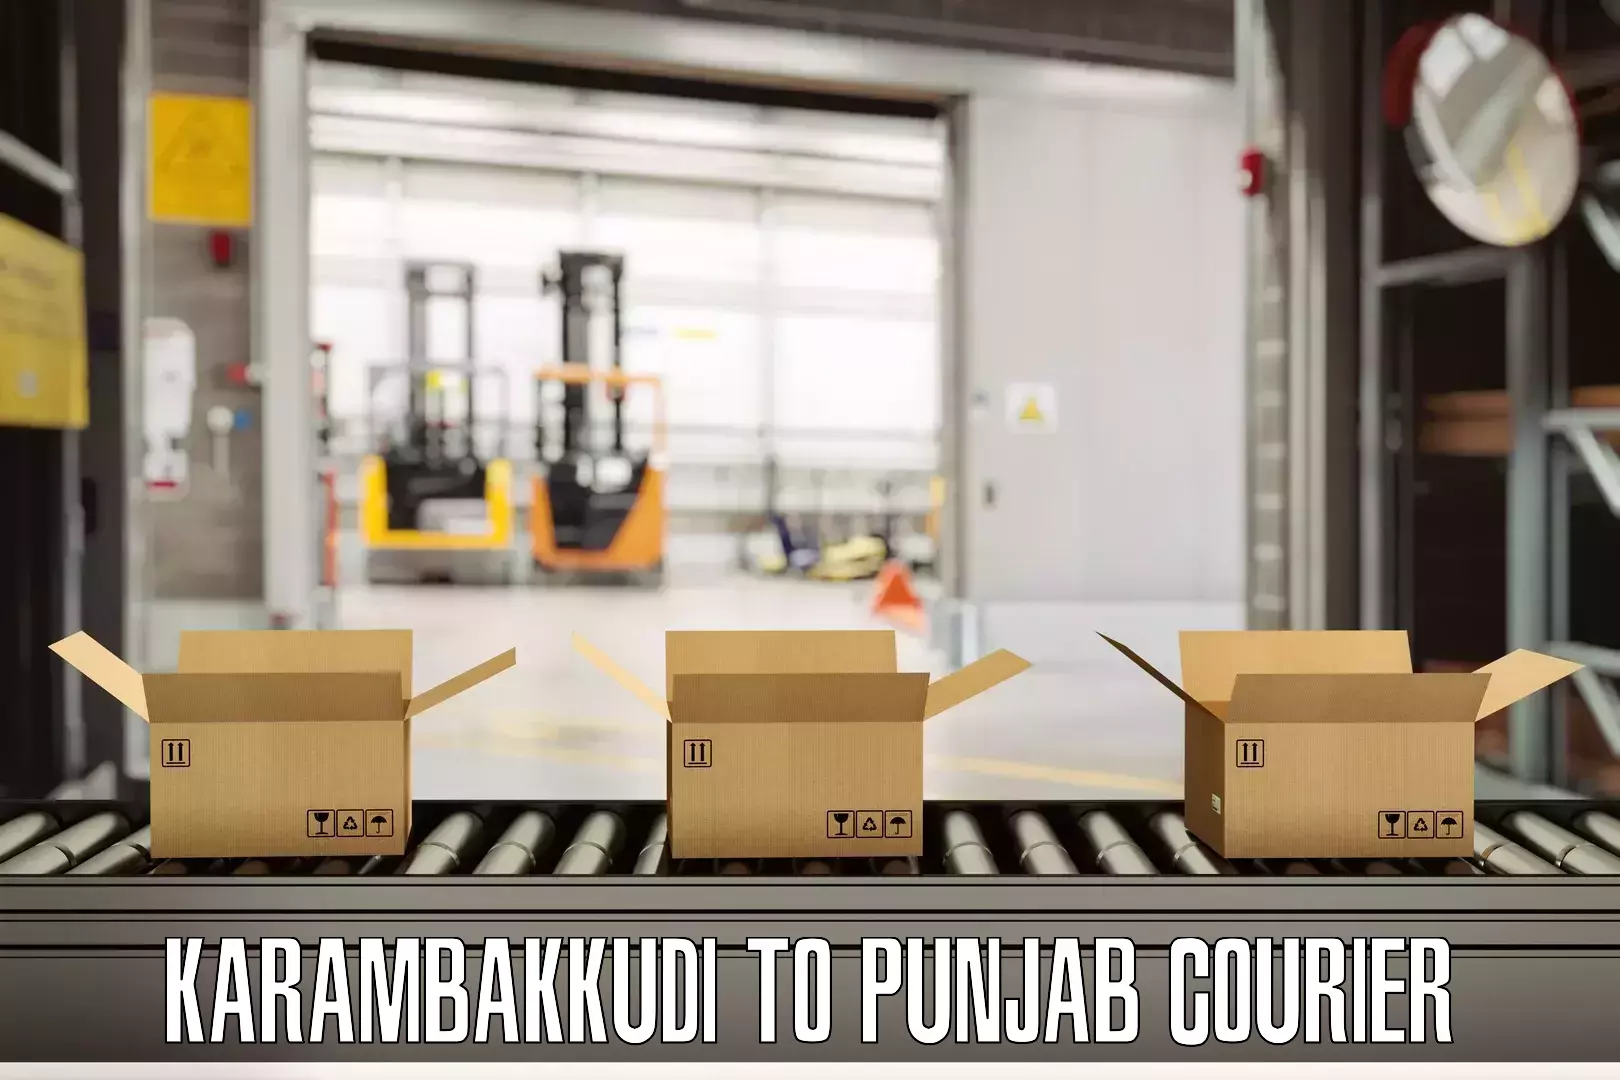 Custom luggage shipping Karambakkudi to Central University of Punjab Bathinda